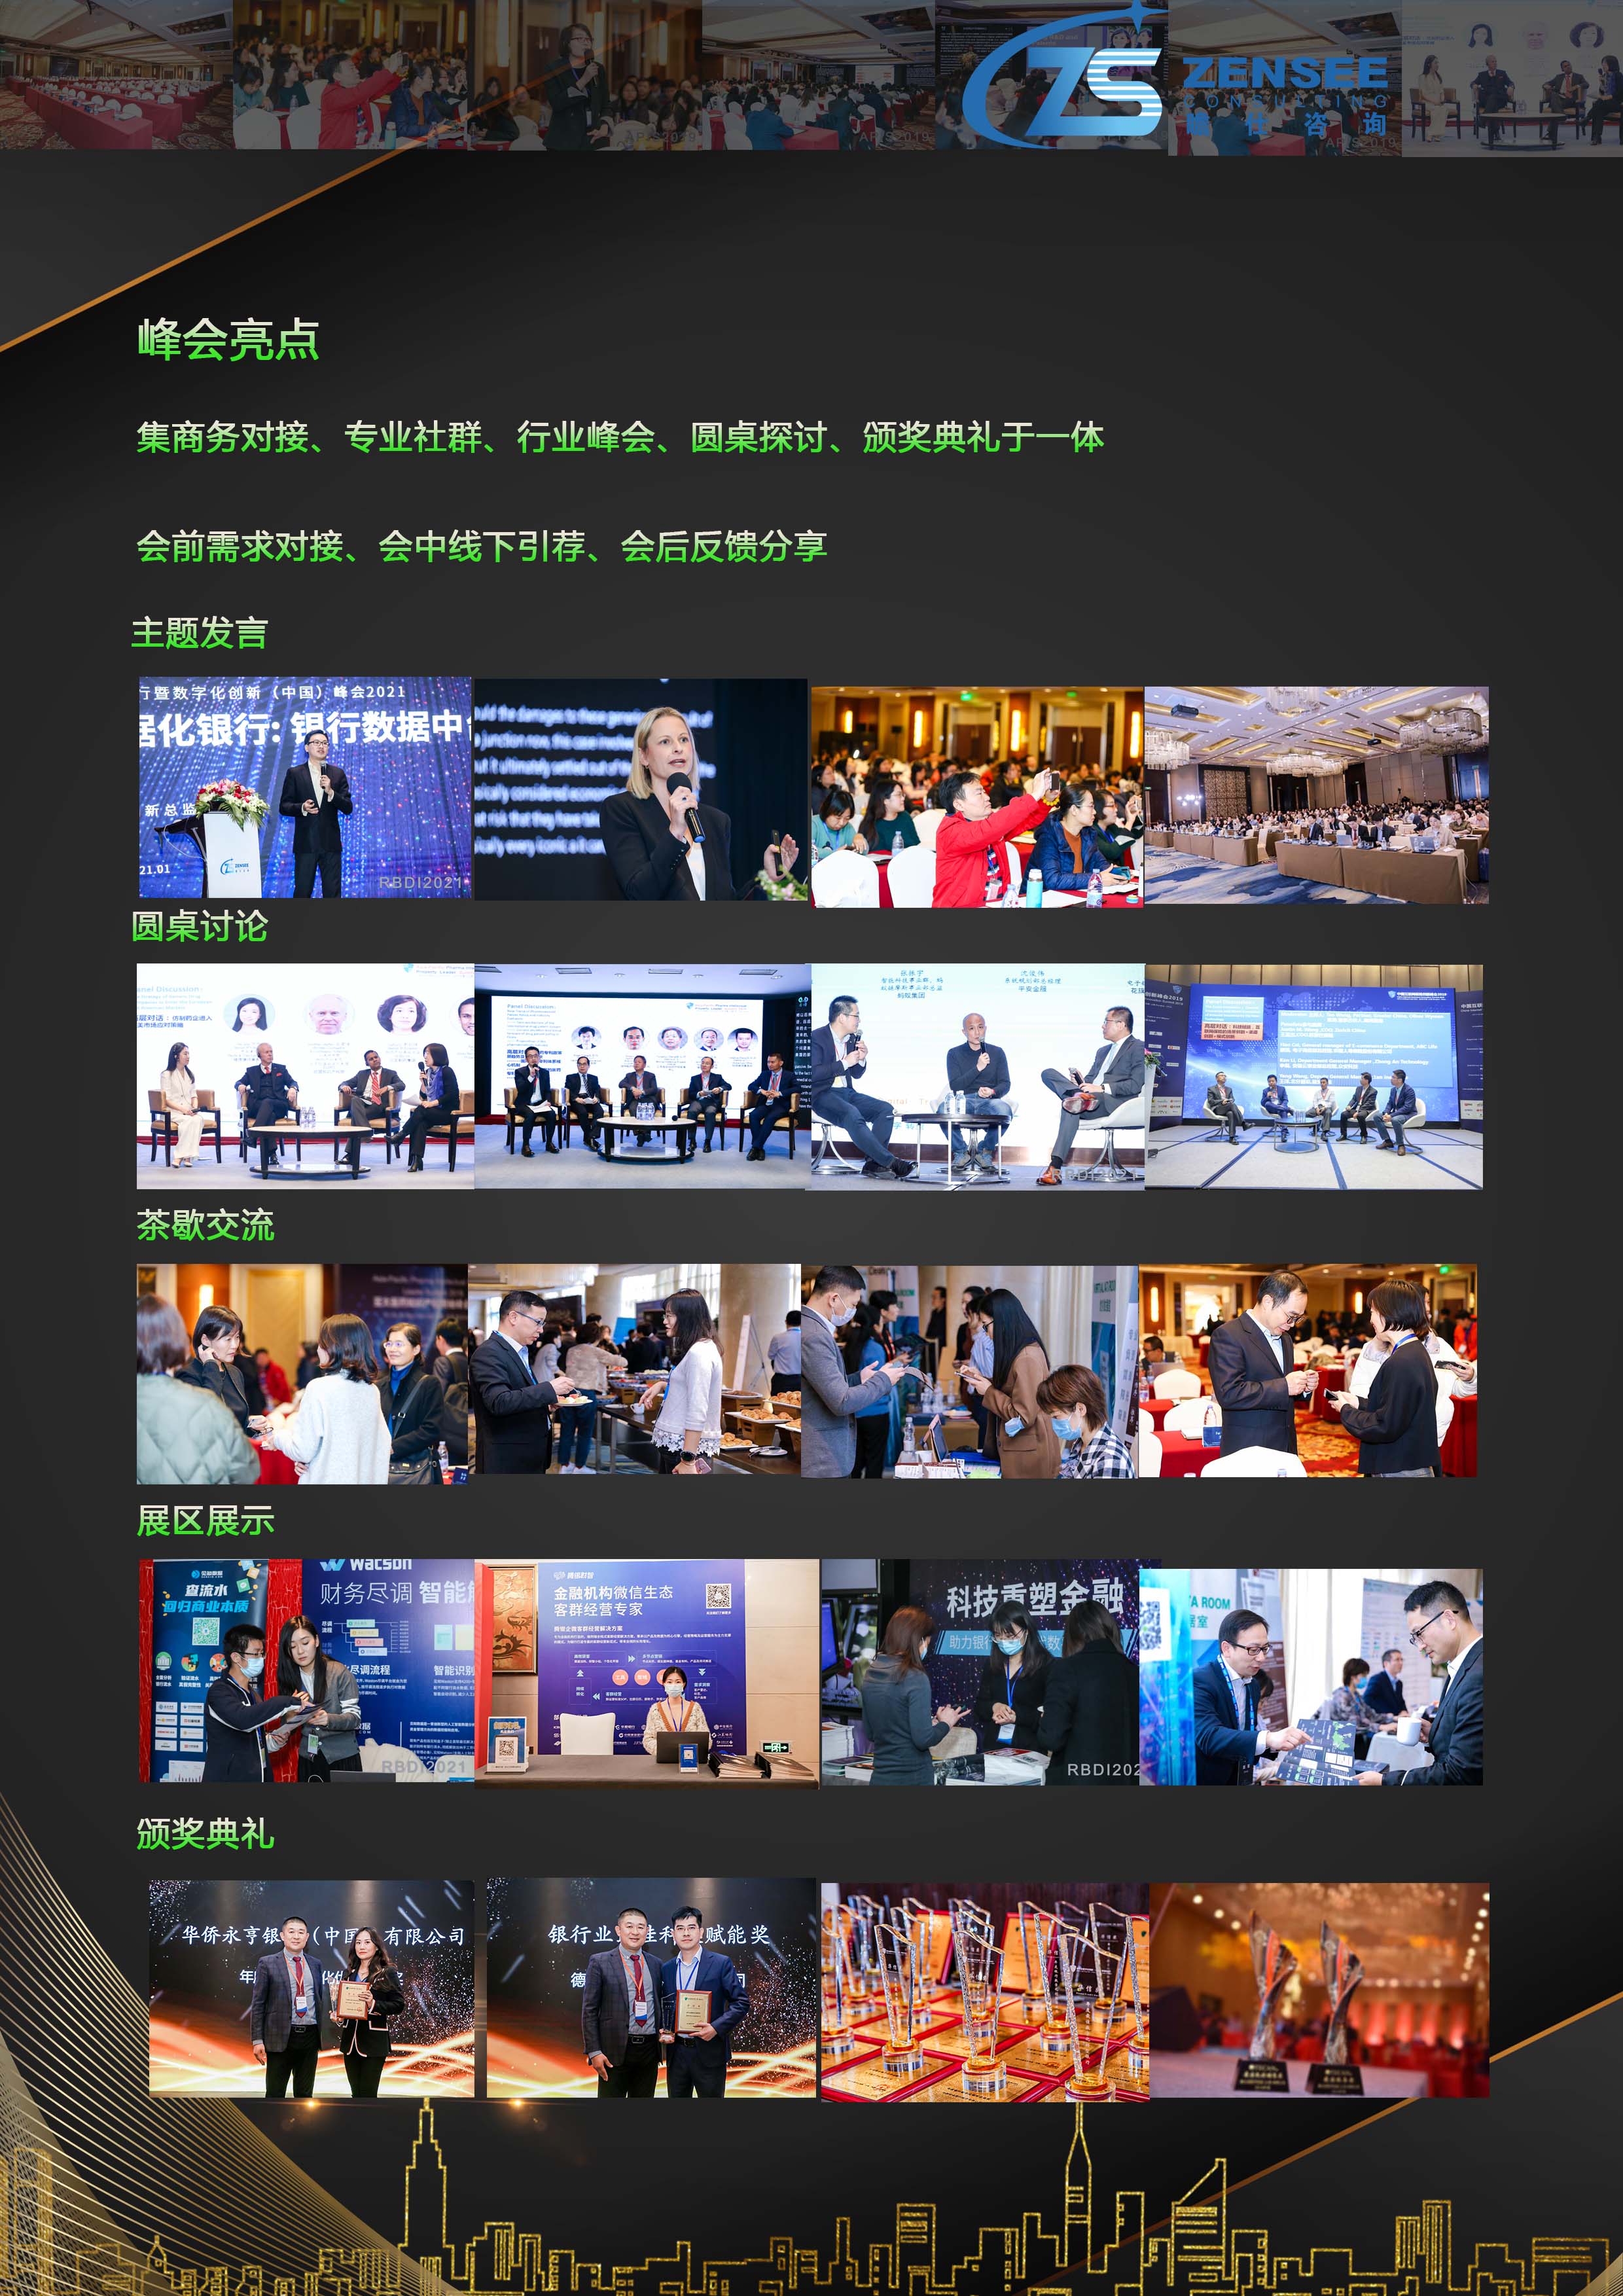 第三屆銀行業數字化創新（中國）峰會暨“華信獎”頒獎典禮